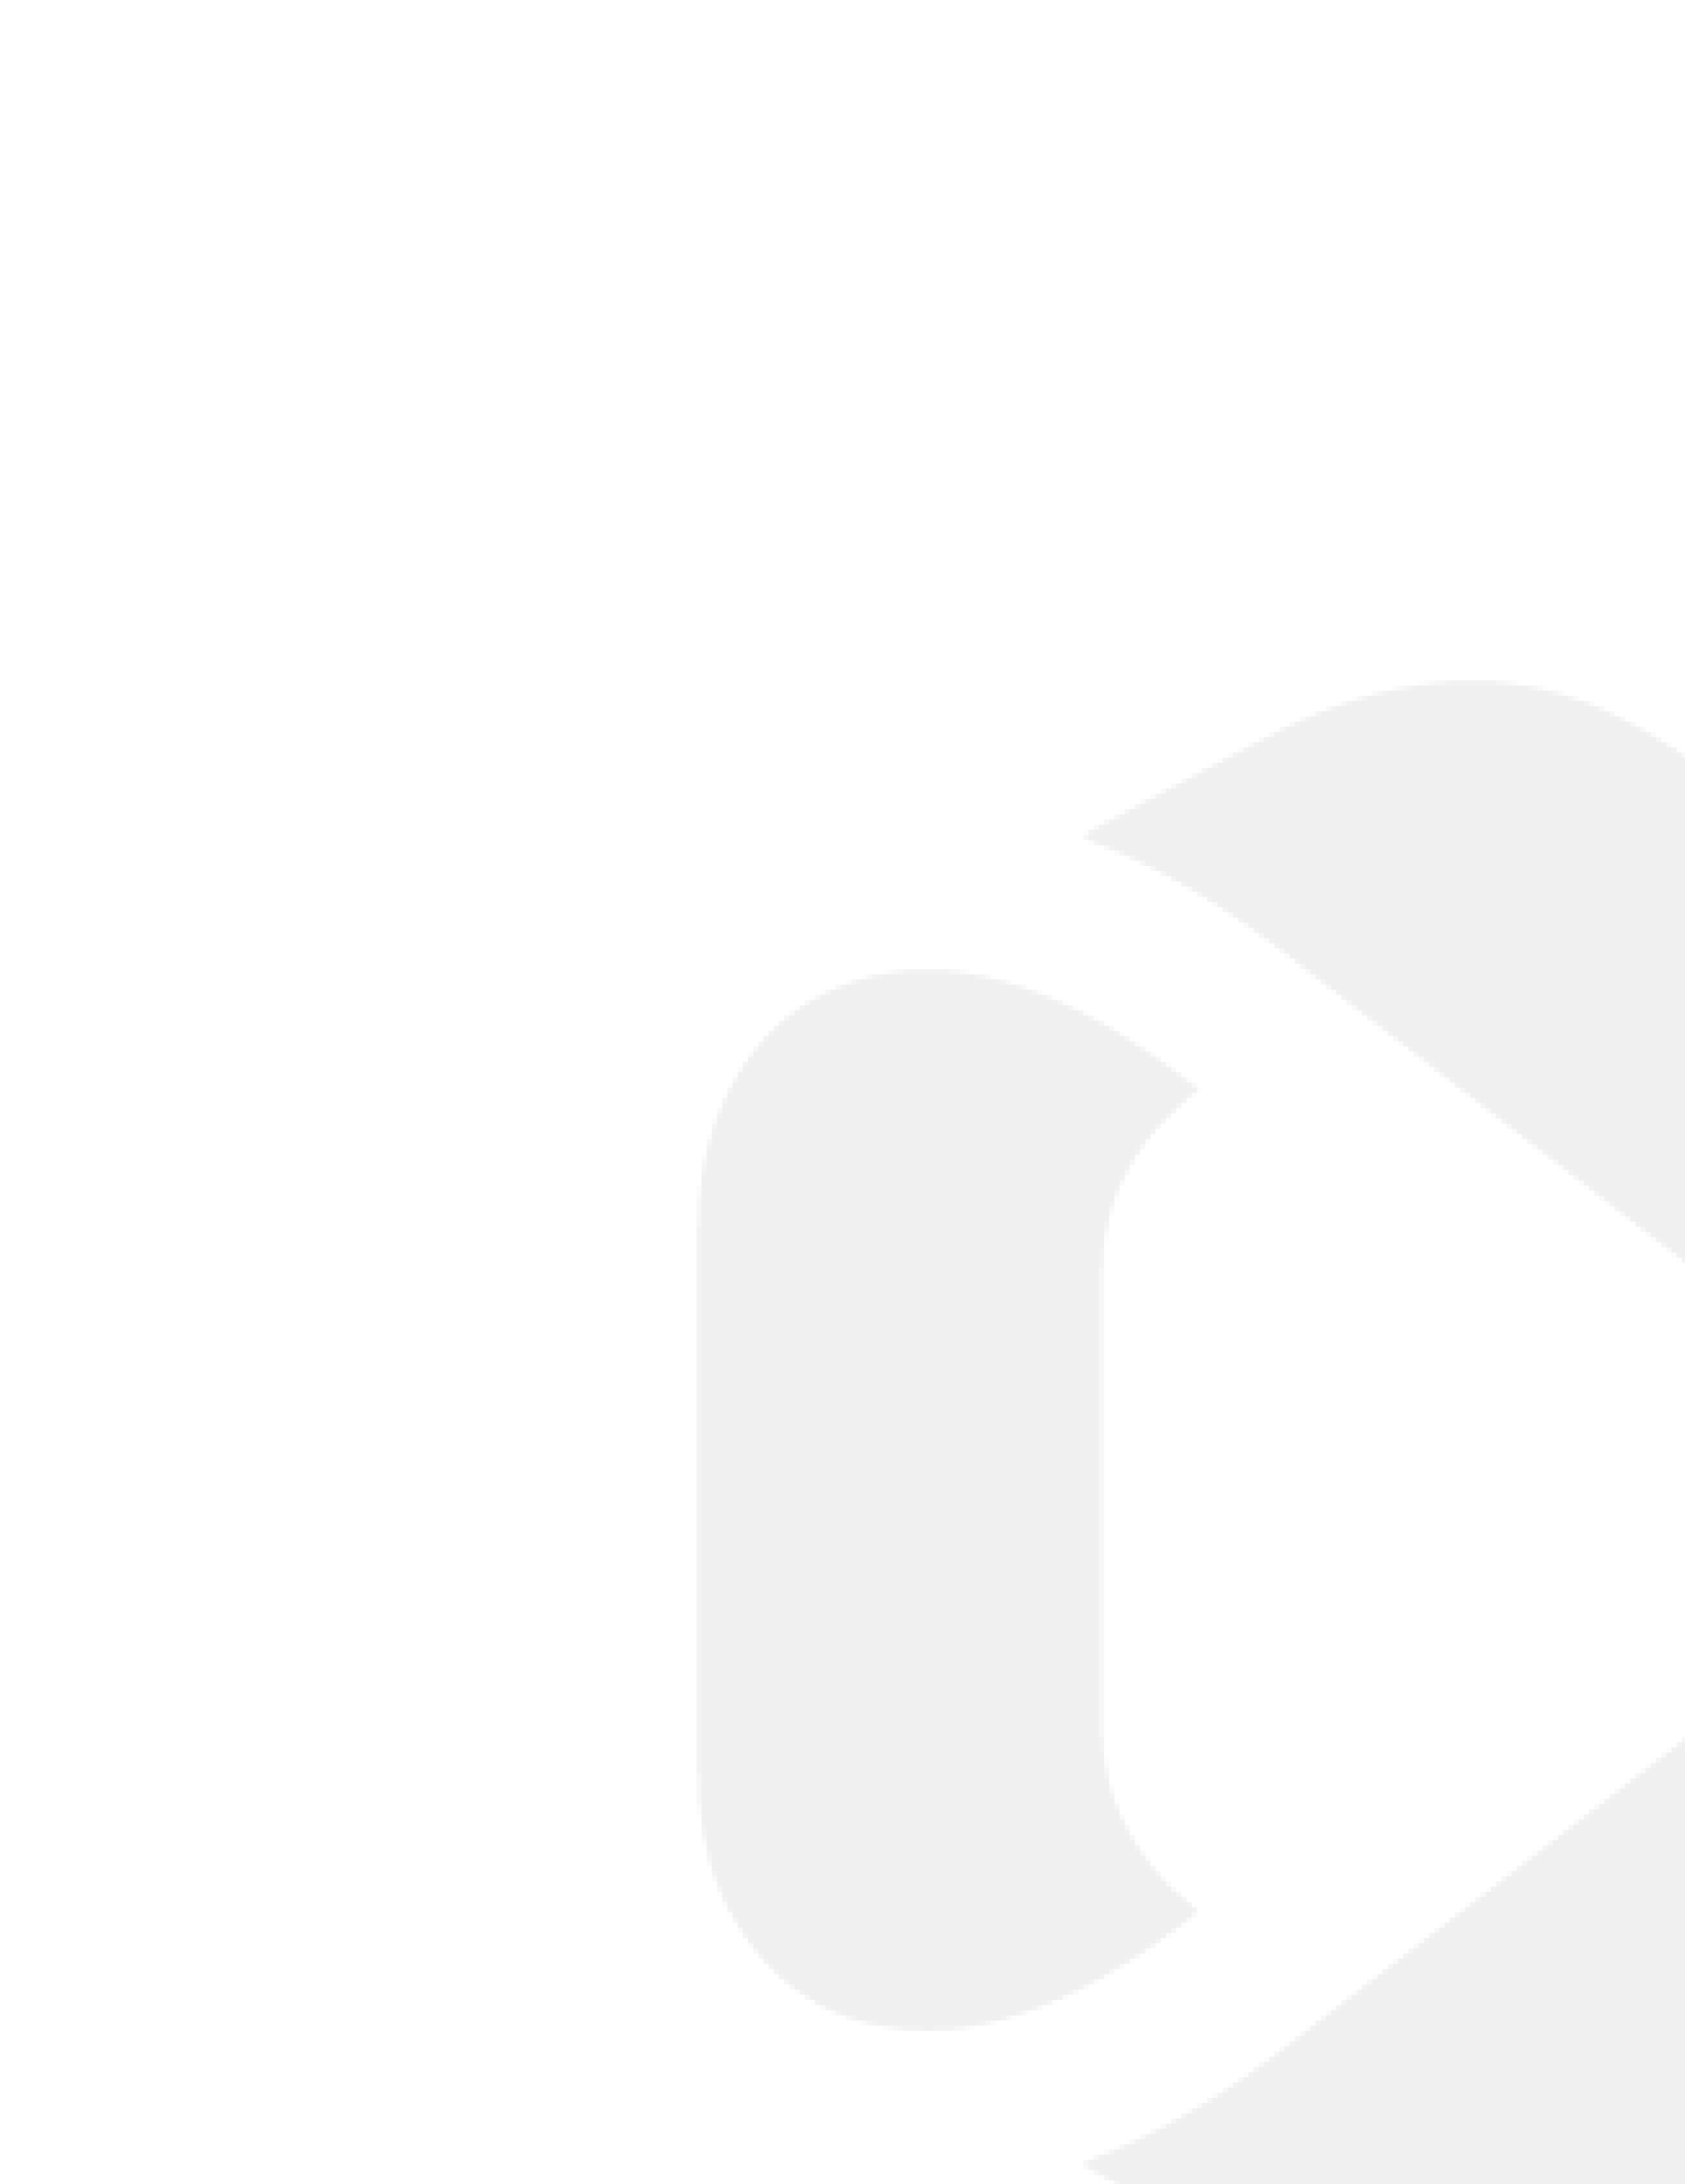 calinda clear logo background